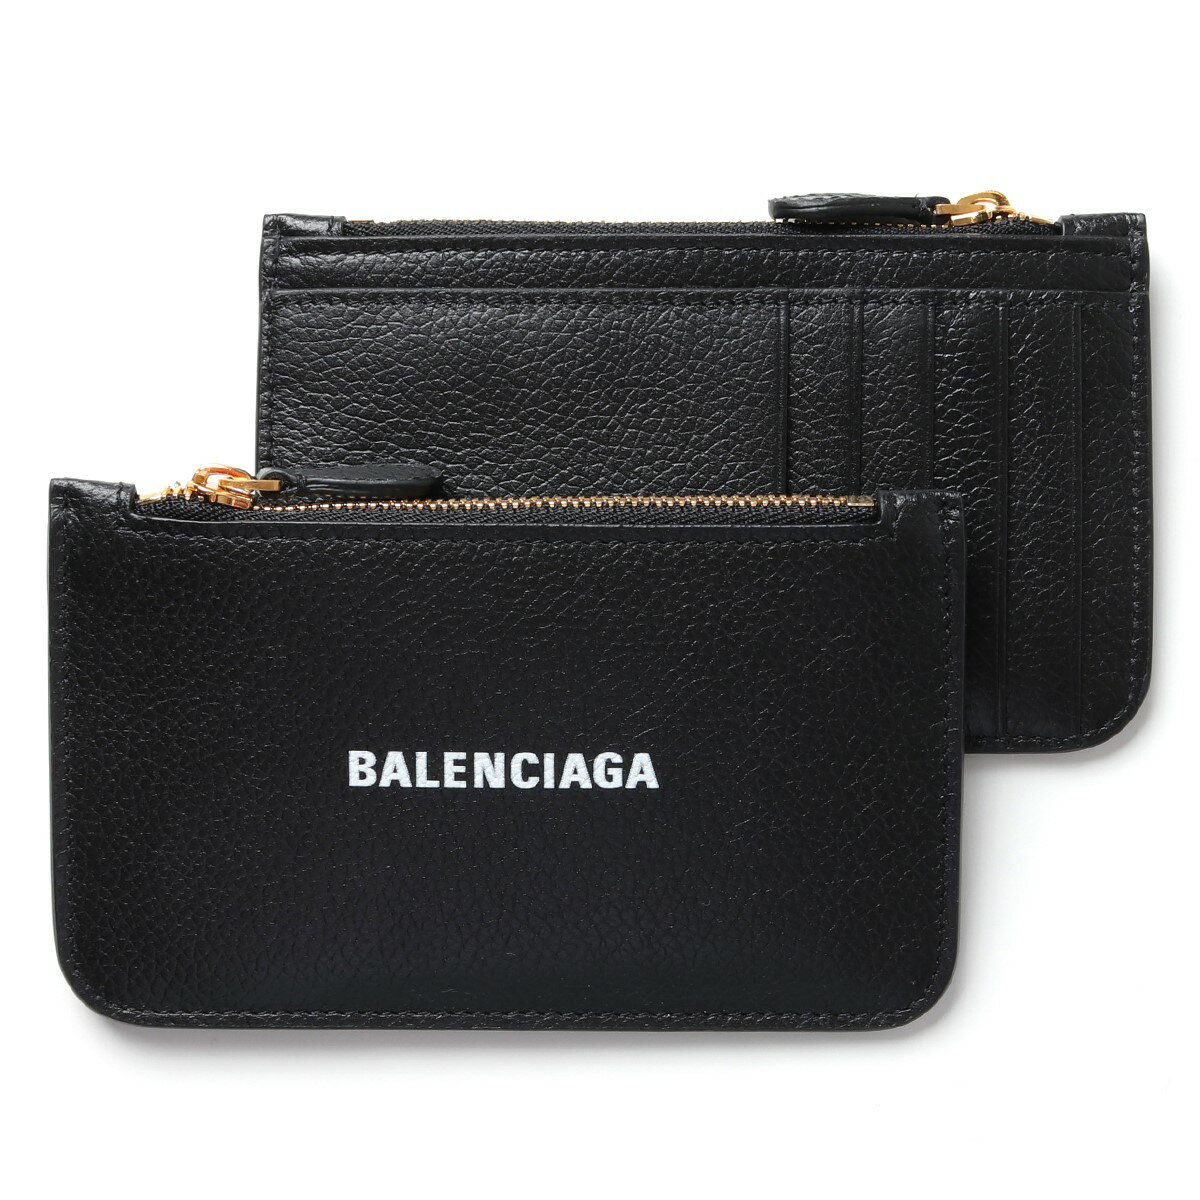 BALENCIAGA バレンシアガ 594214 1IZIM レザー カードケース パスケース コインケース ミニ財布 フラグメントケース 1090/BLACK/L-WHITE メンズ